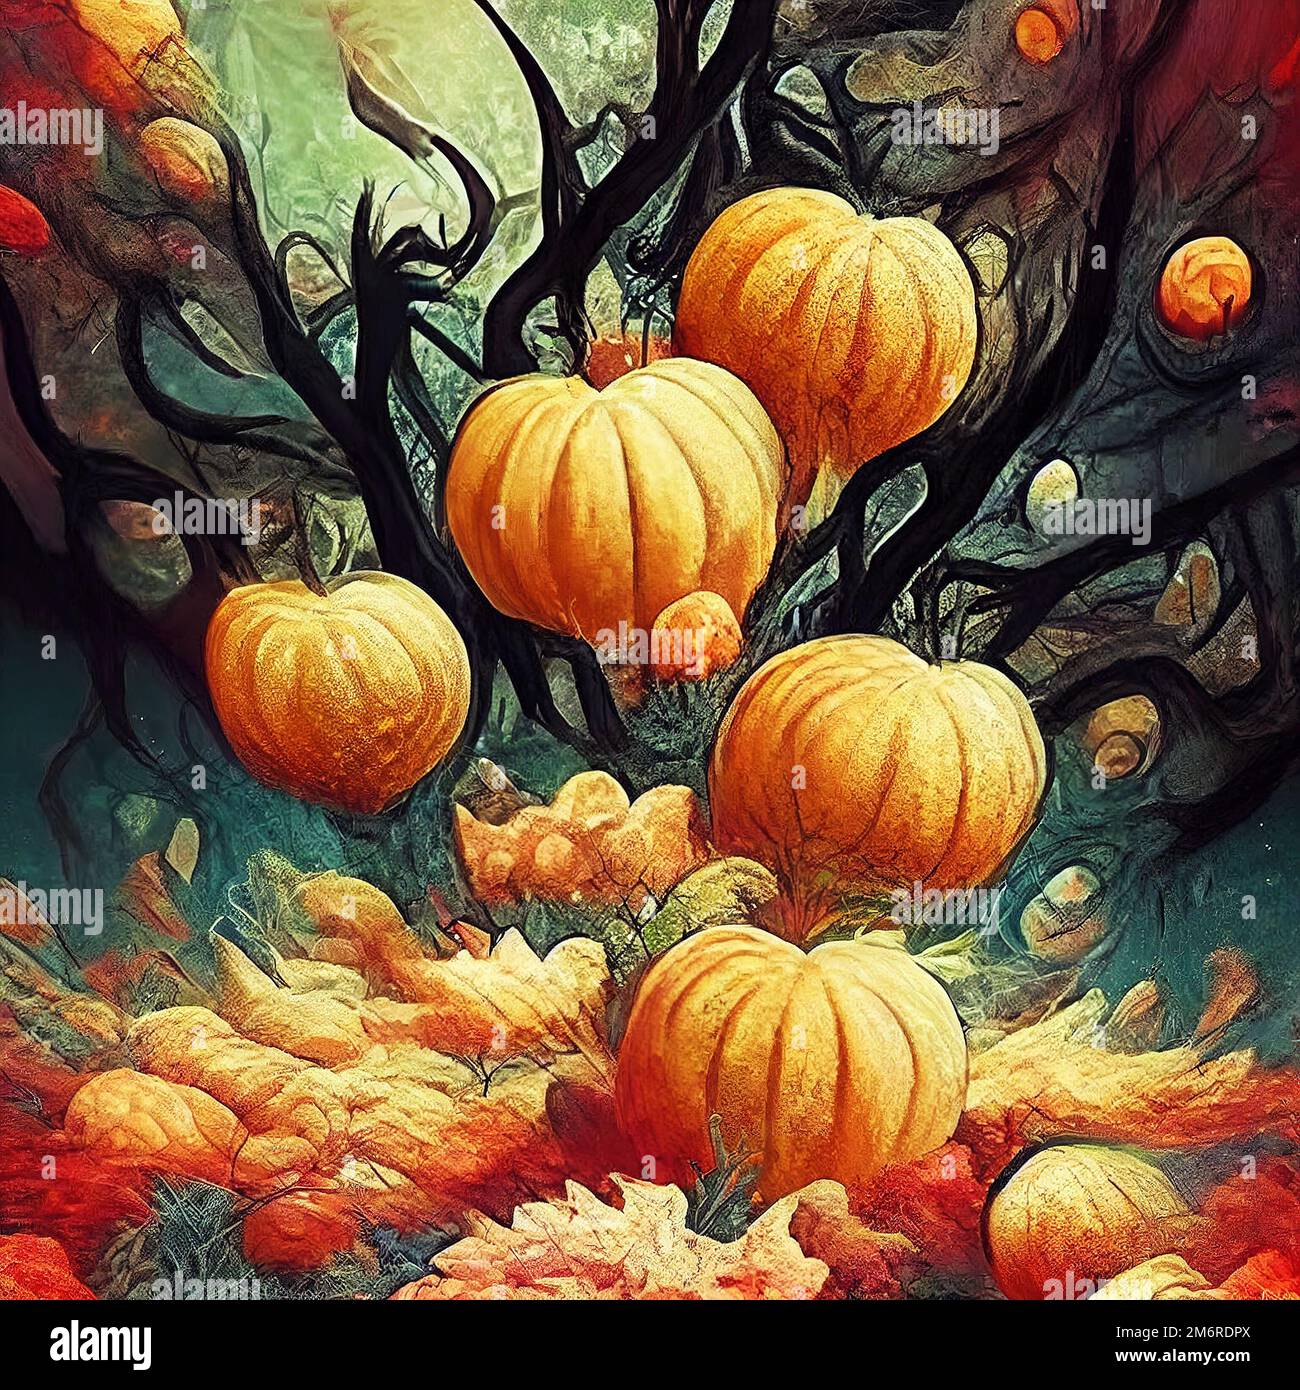 Citrouilles d'automne dans des arbres sombres. Illustration avec citrouilles rouges d'automne. Peinture associative. Illustration numérique basée sur rend Banque D'Images